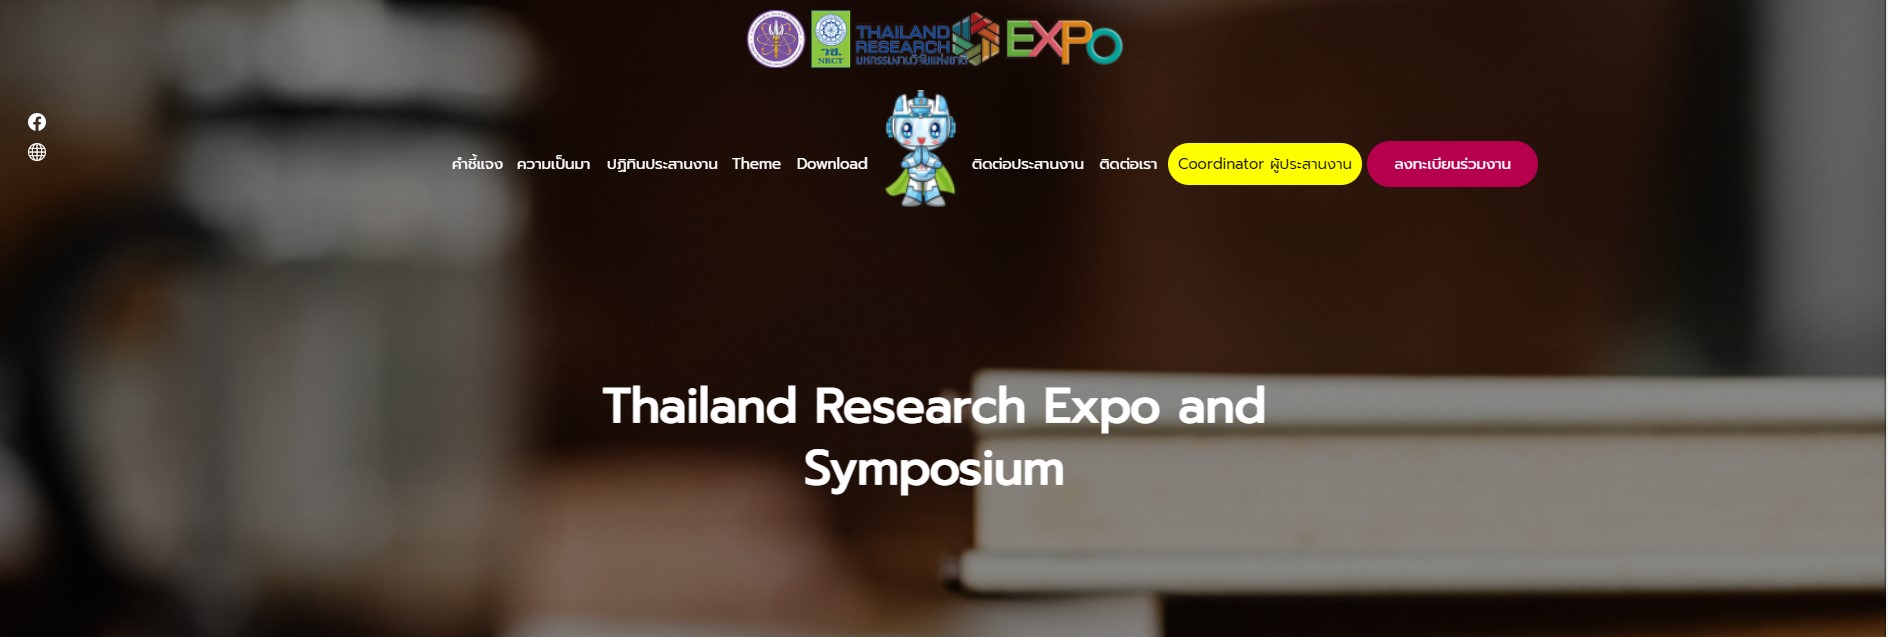 ขอเชิญเข้าร่วมนำเสนอผลงานวิจัยในกิจกรรม Thailand Research Expo and Symposium 2022